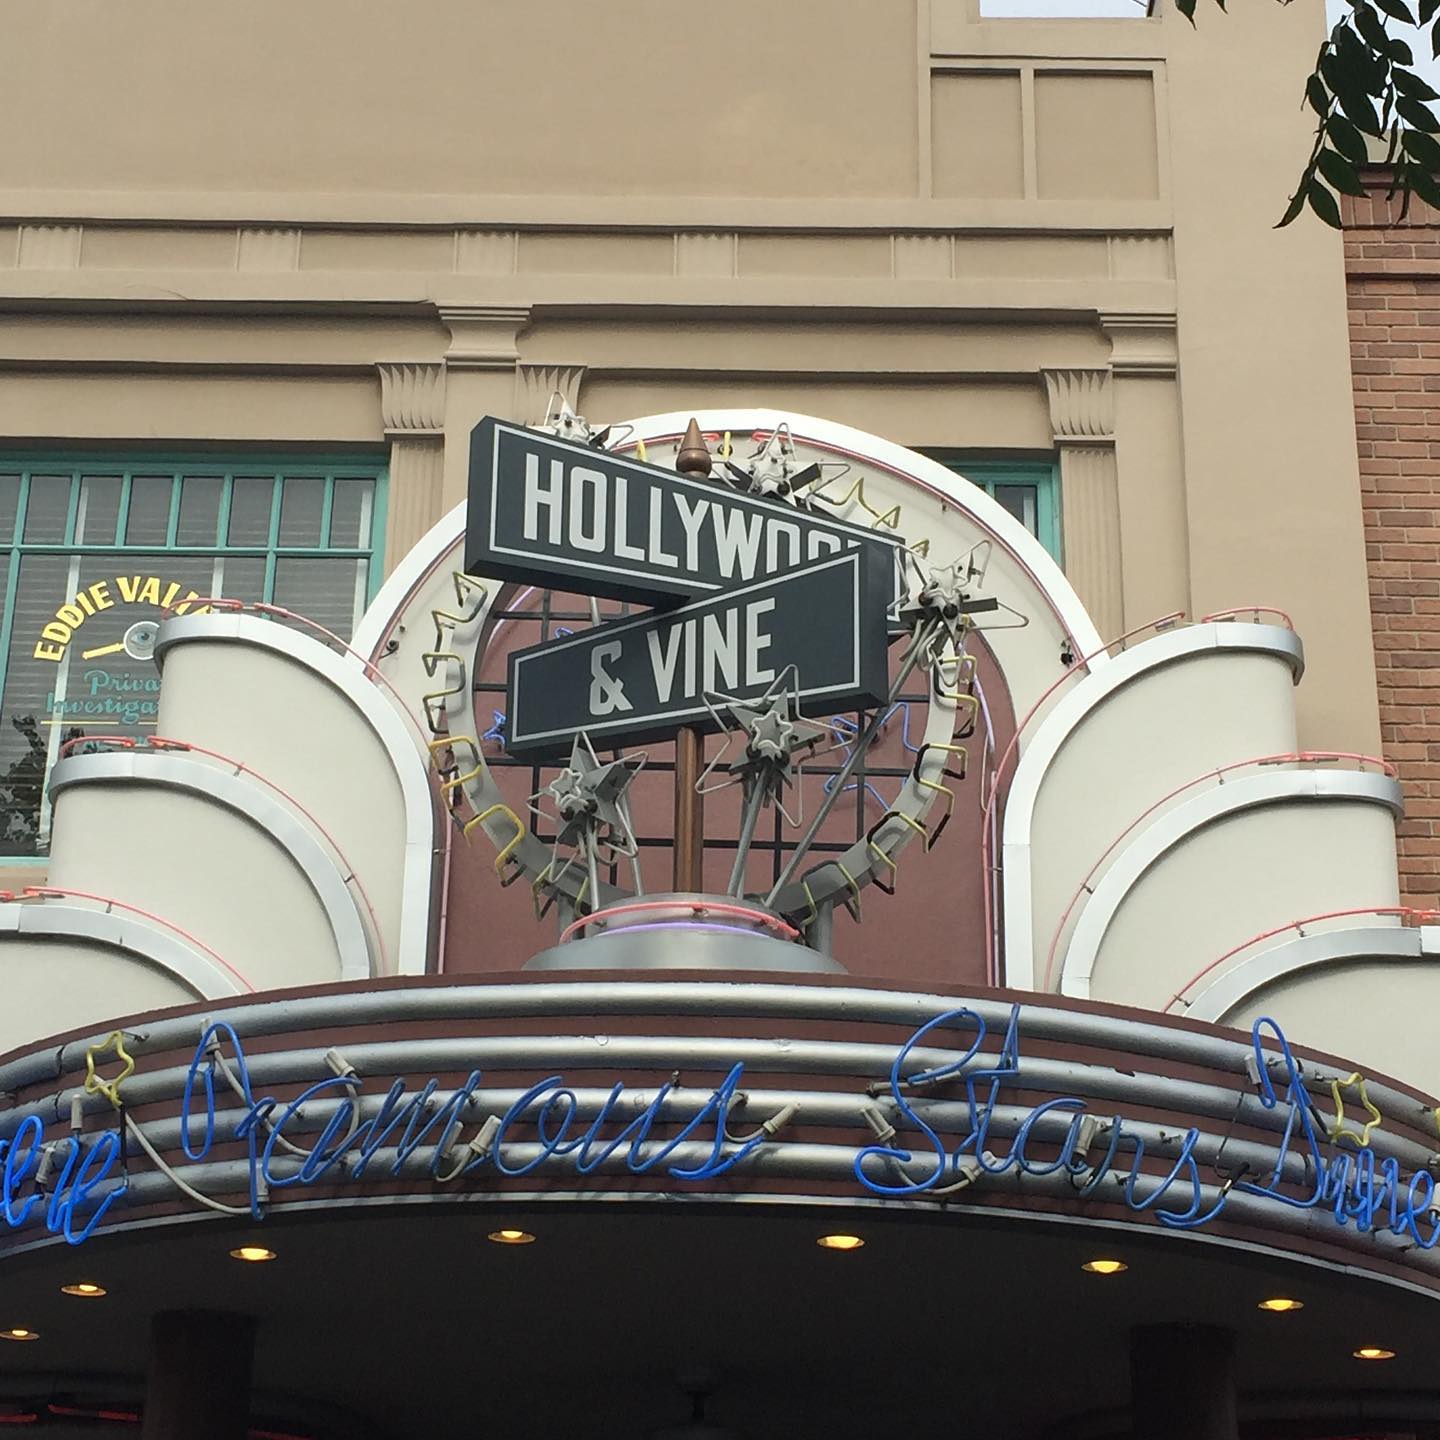 Disney's Hollywood & Vine